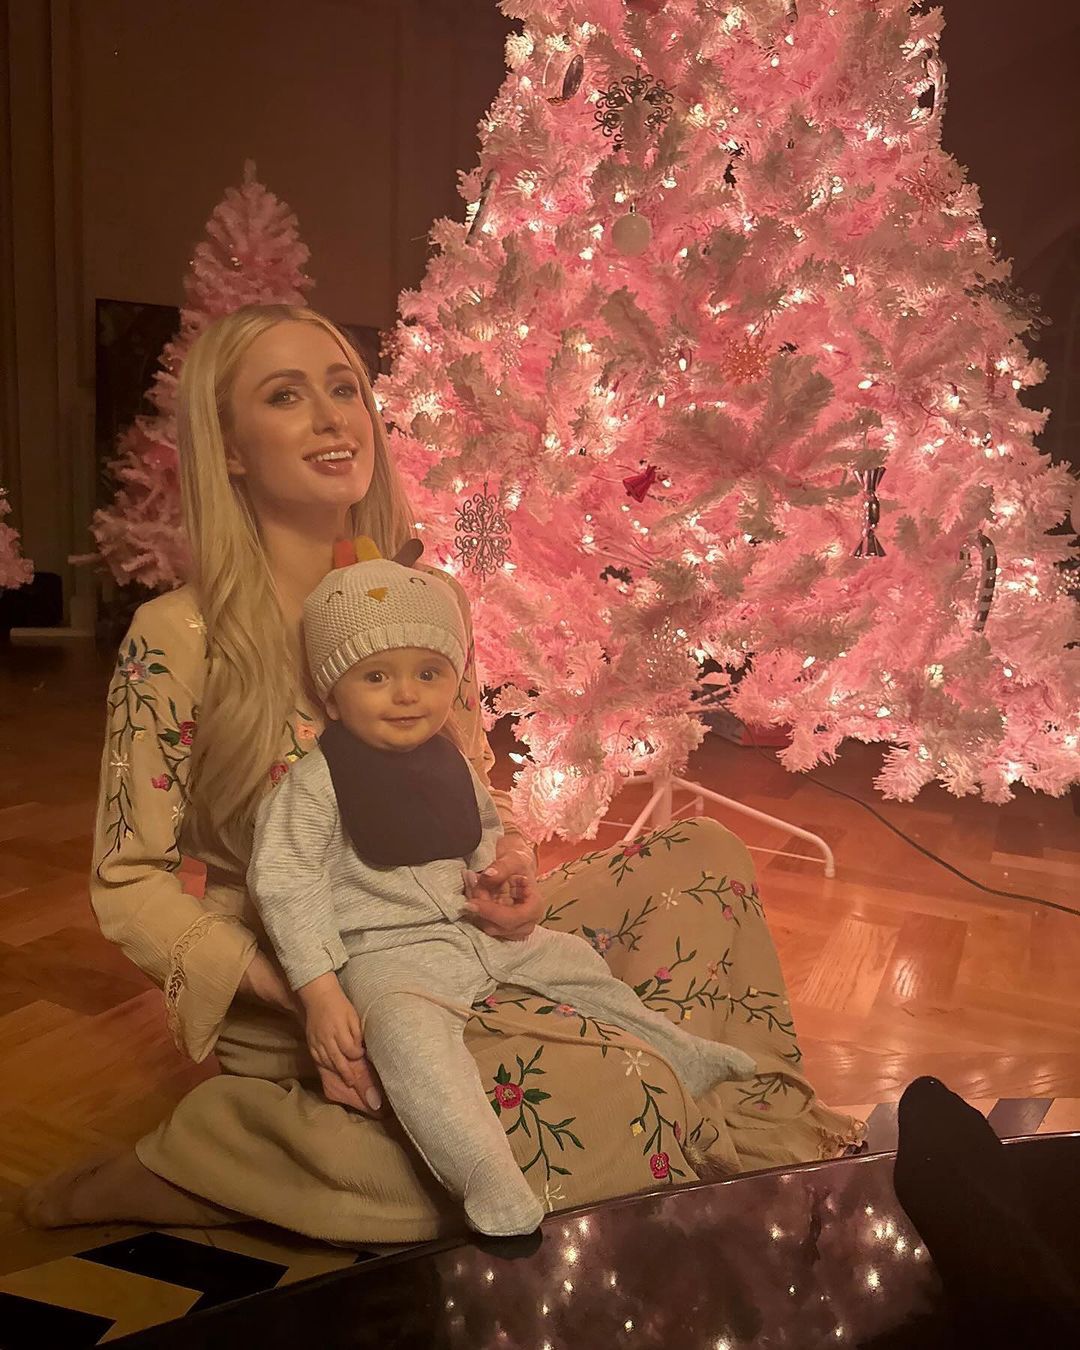 Paris Hilton with her little son